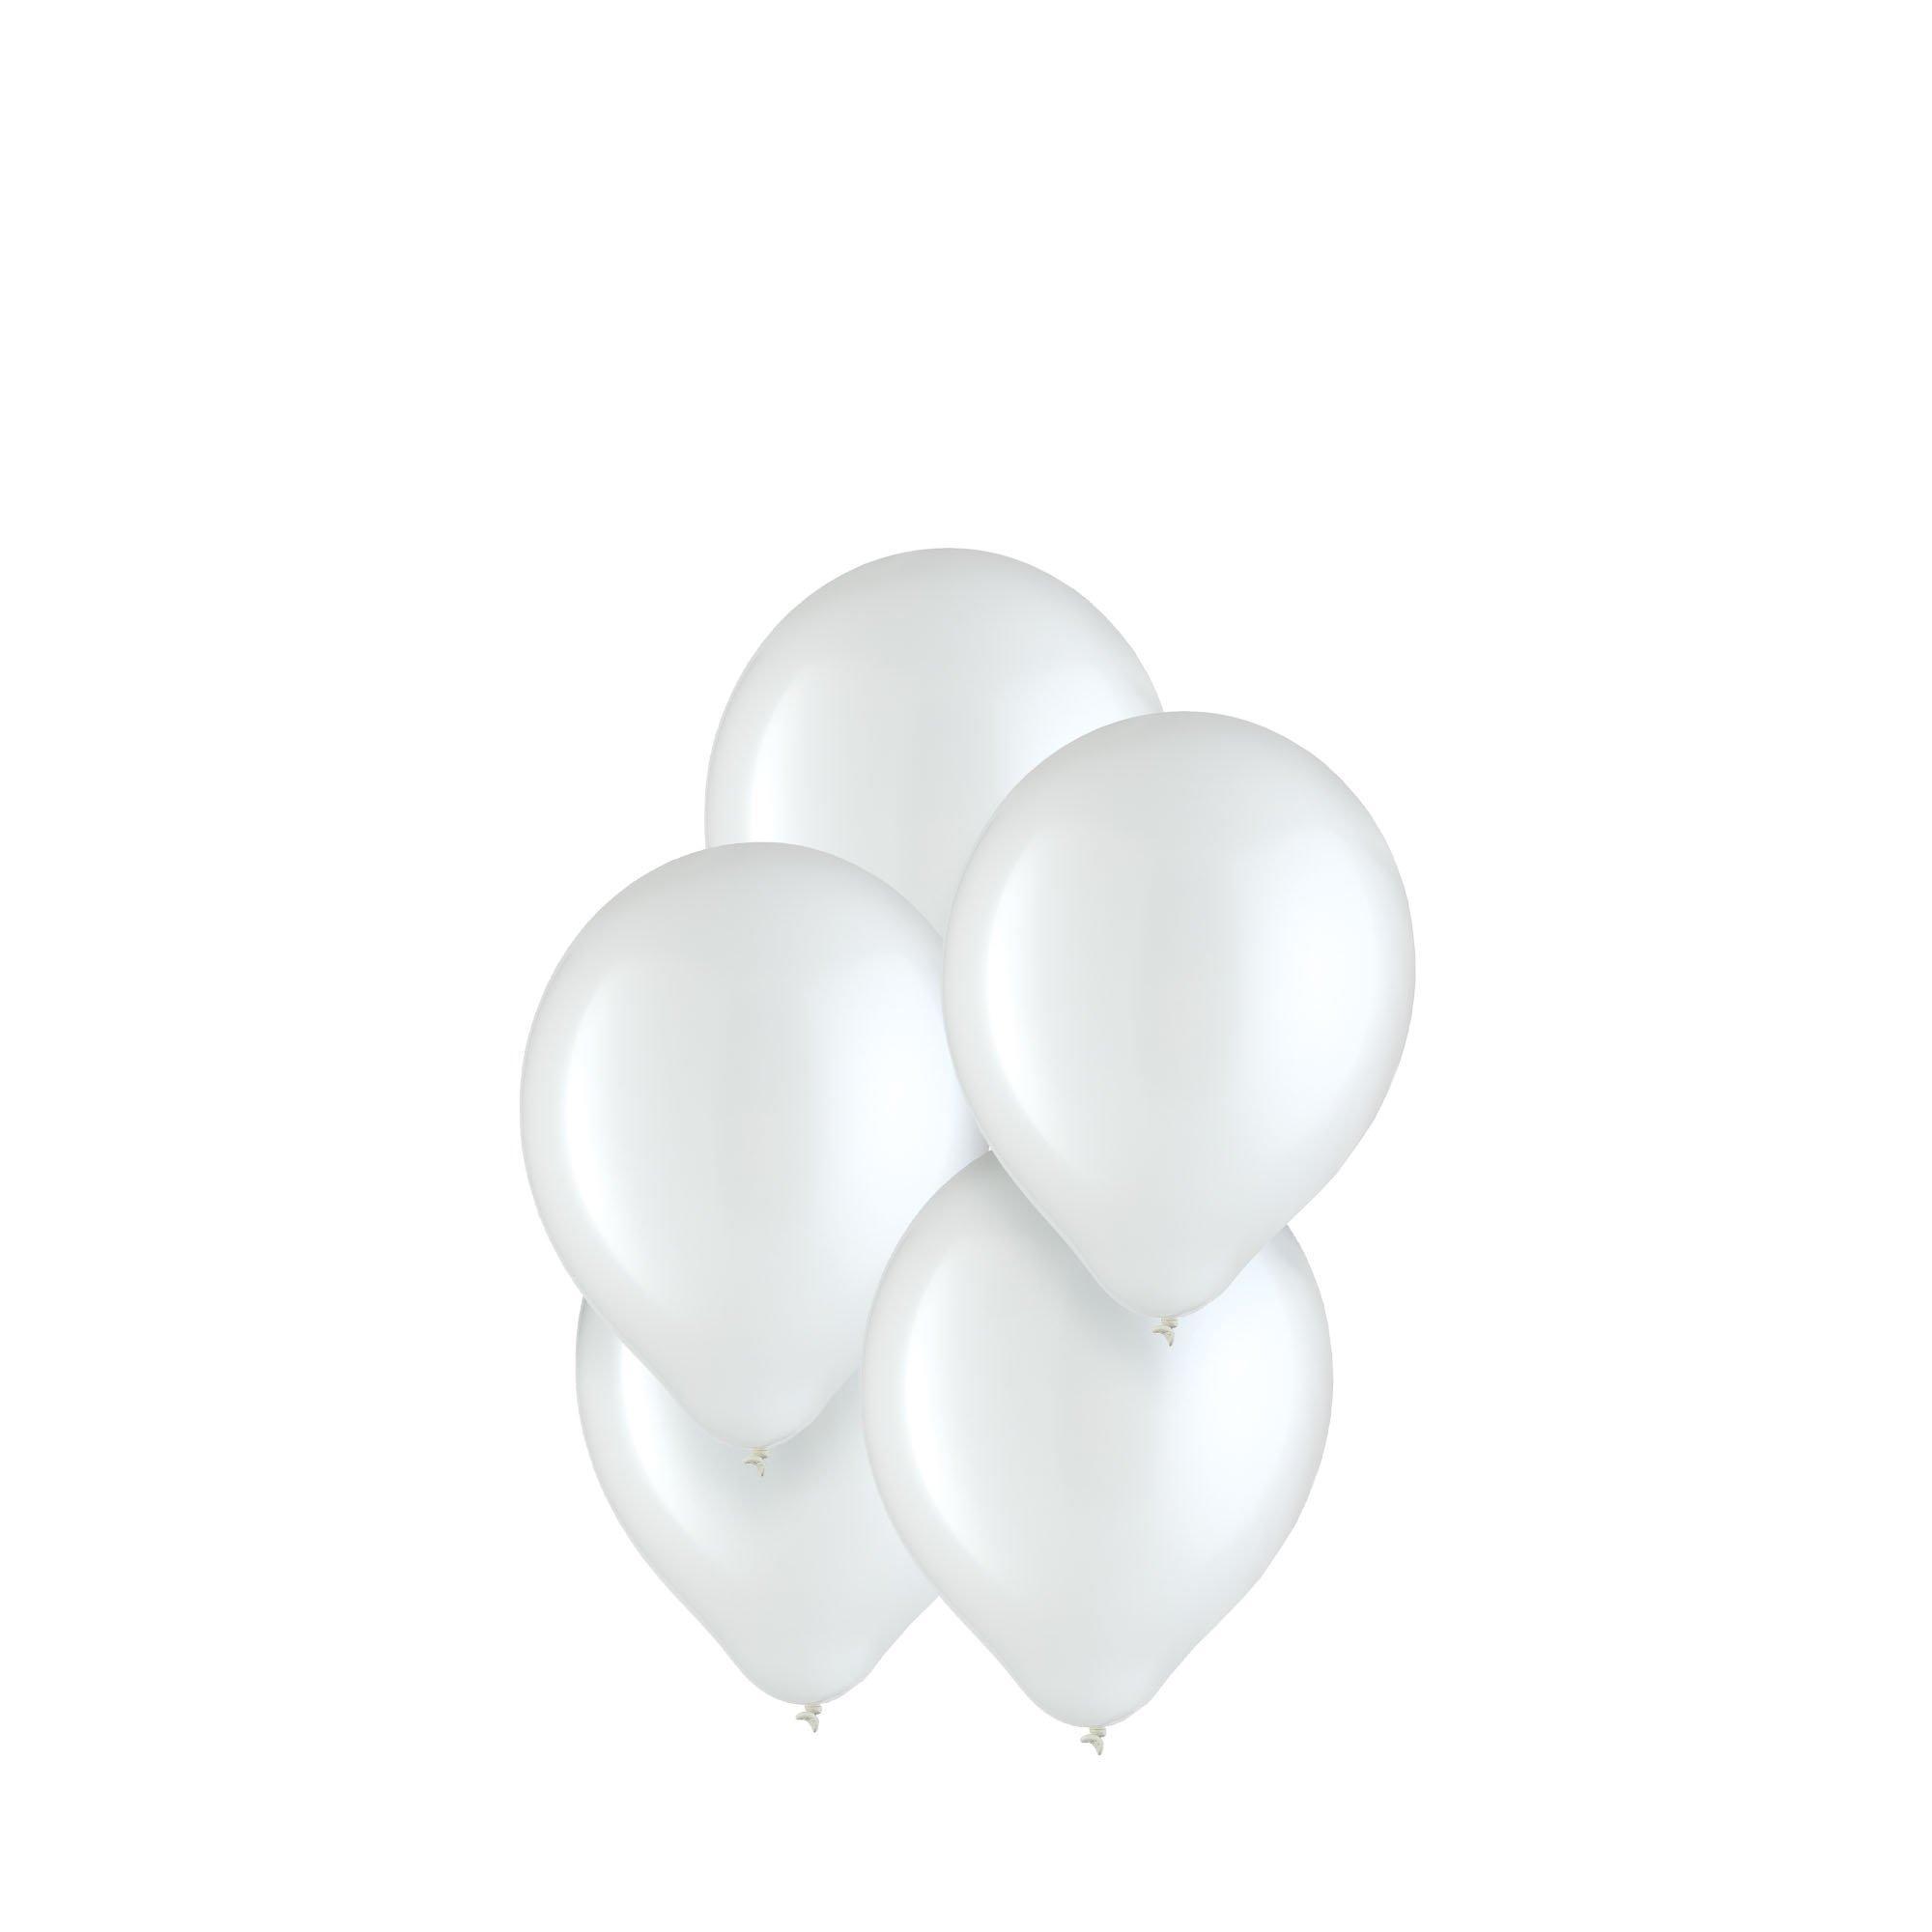 5 ballons transparents confettis blancs